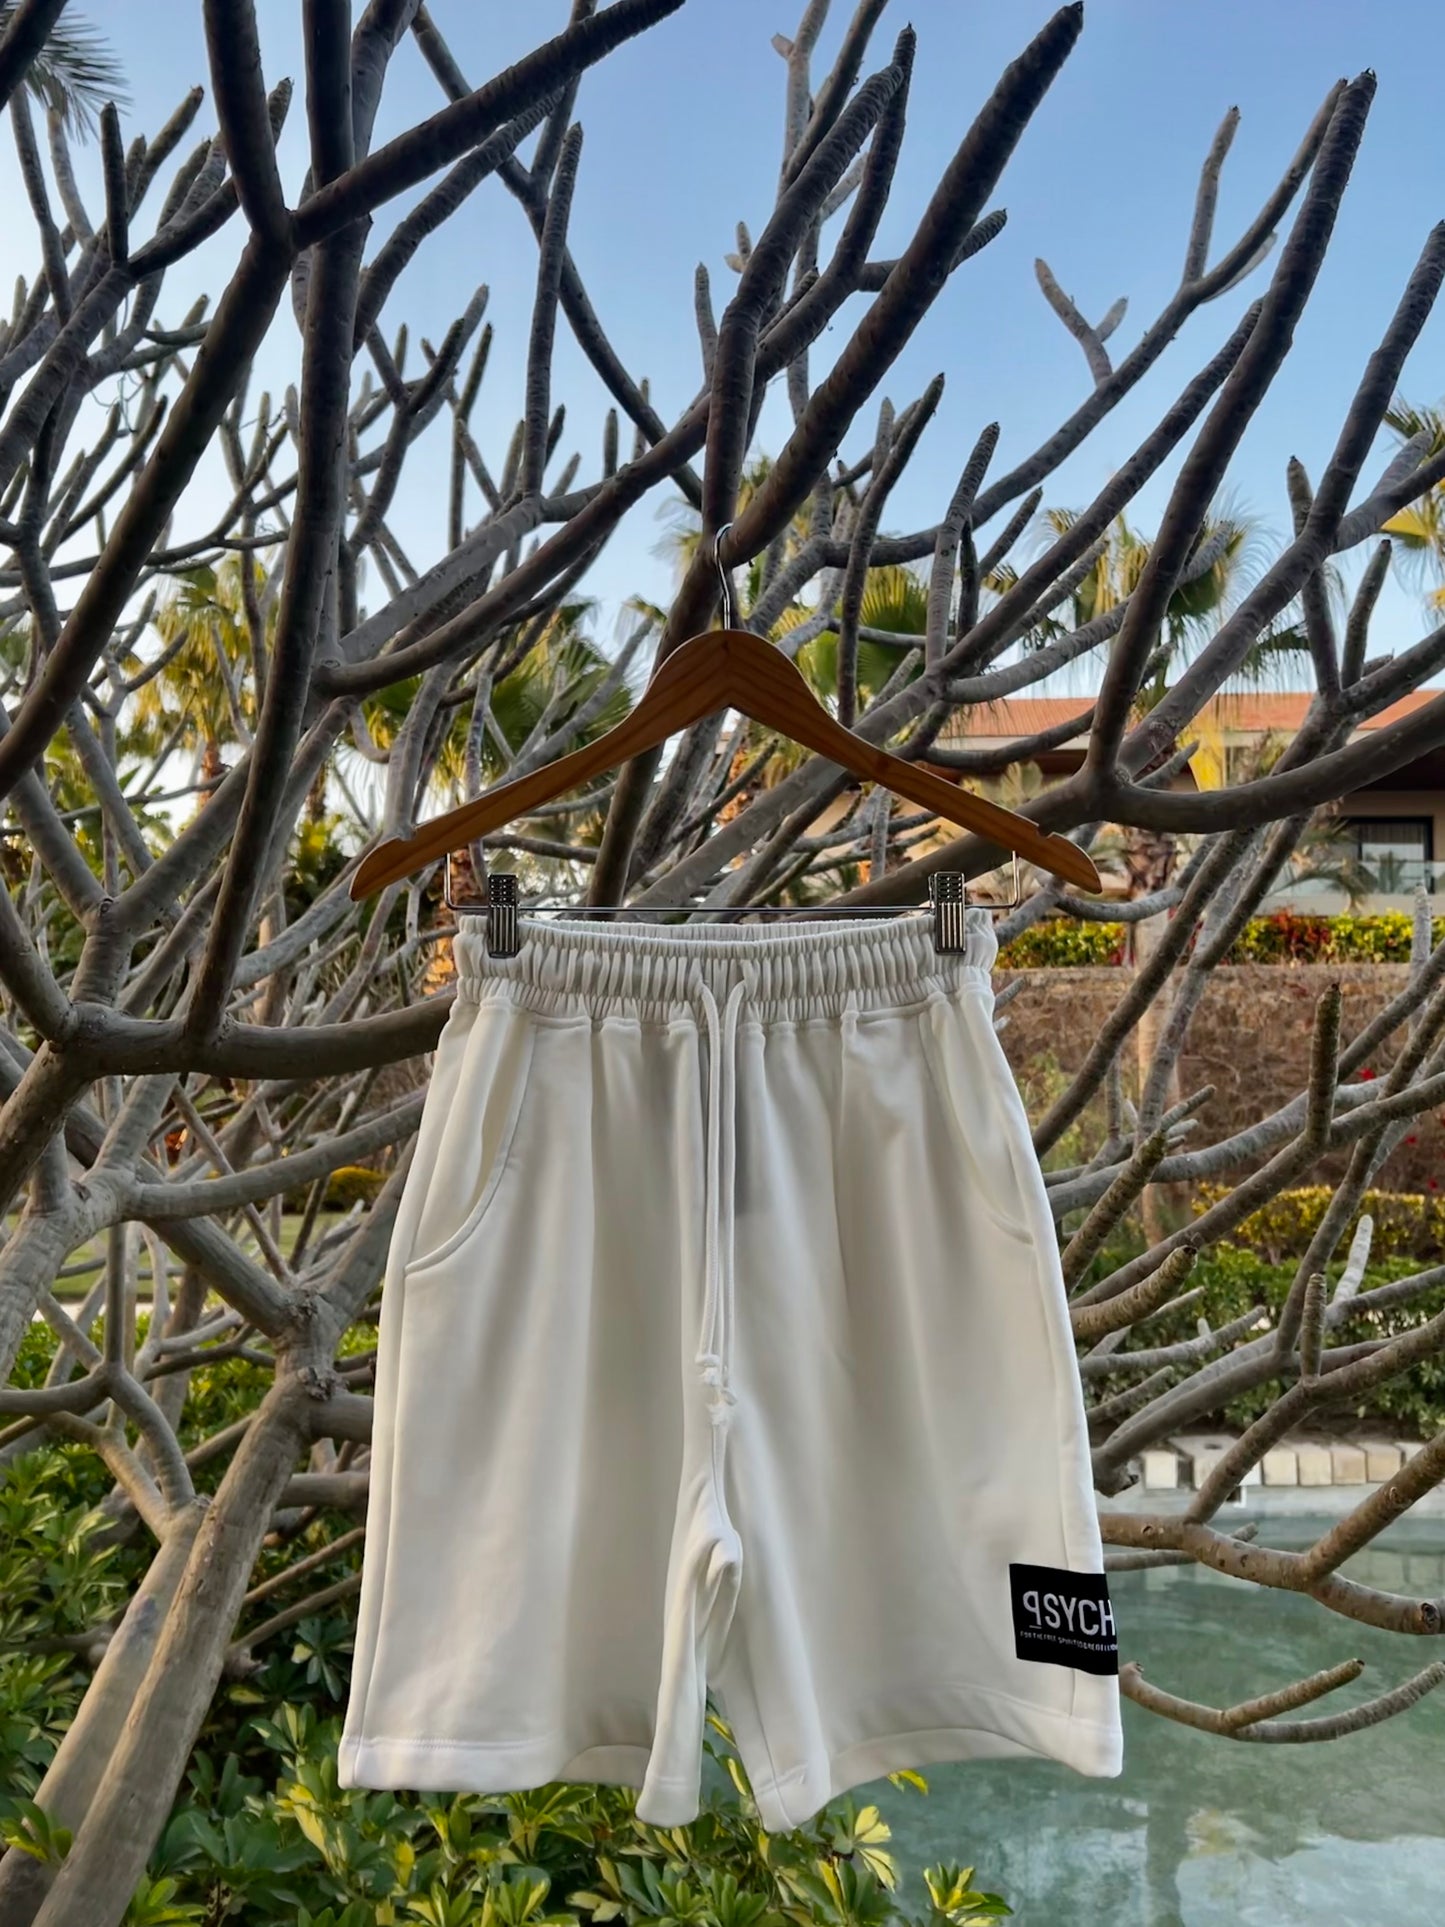 White Sweat Shorts (Unisex)